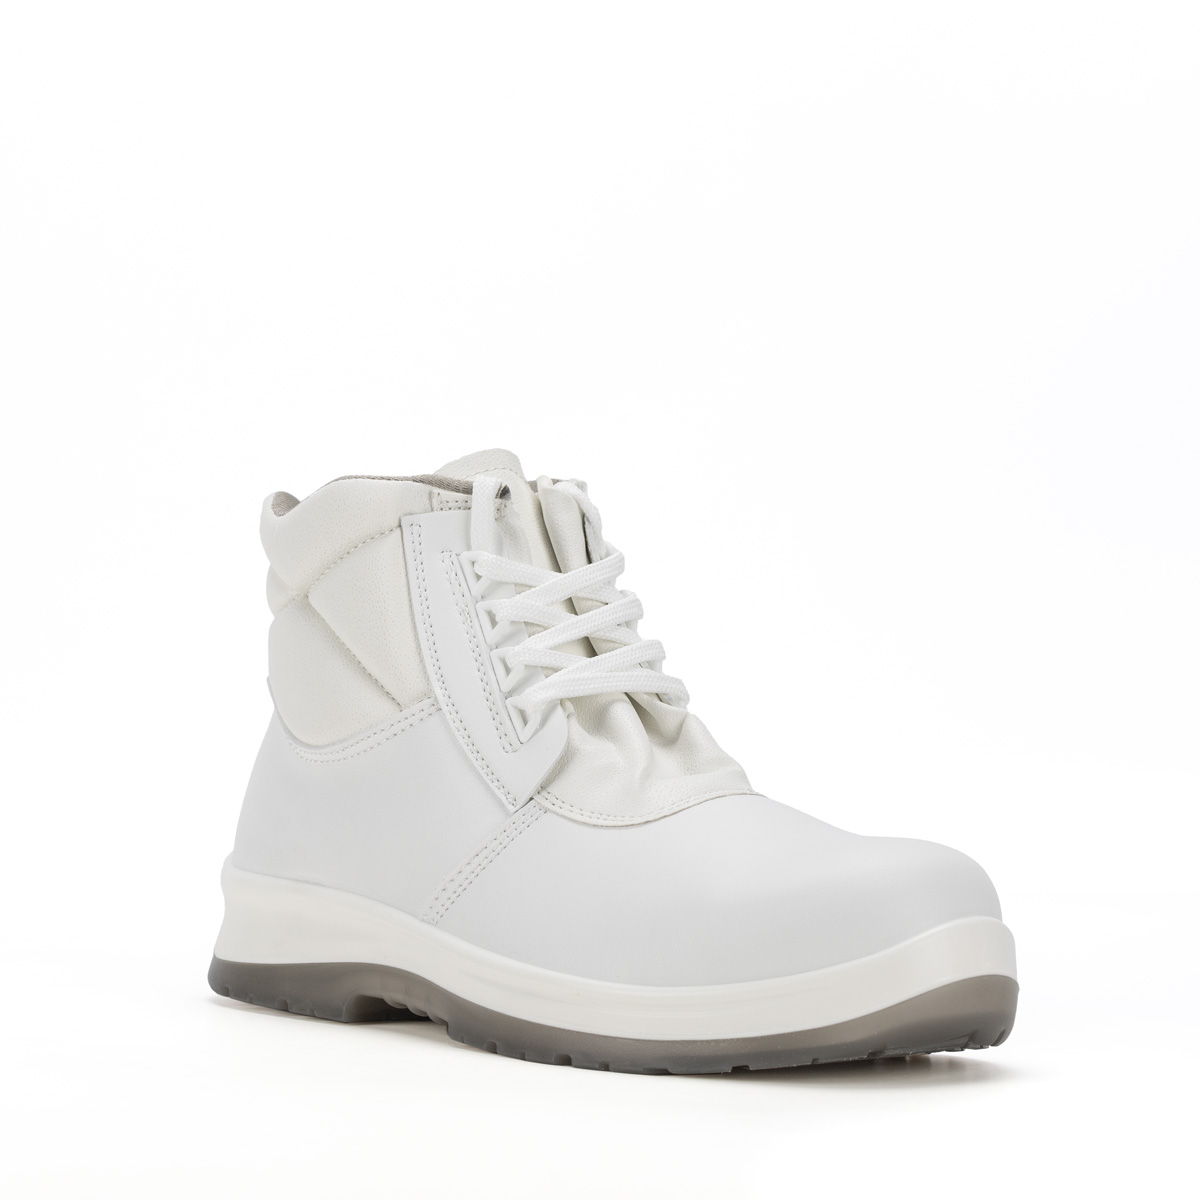 86206-00 boot Sixton - Ankle protezione Safety SRC BERGAMO con di - S2 Crystal Peak modello Codice classe Shoes